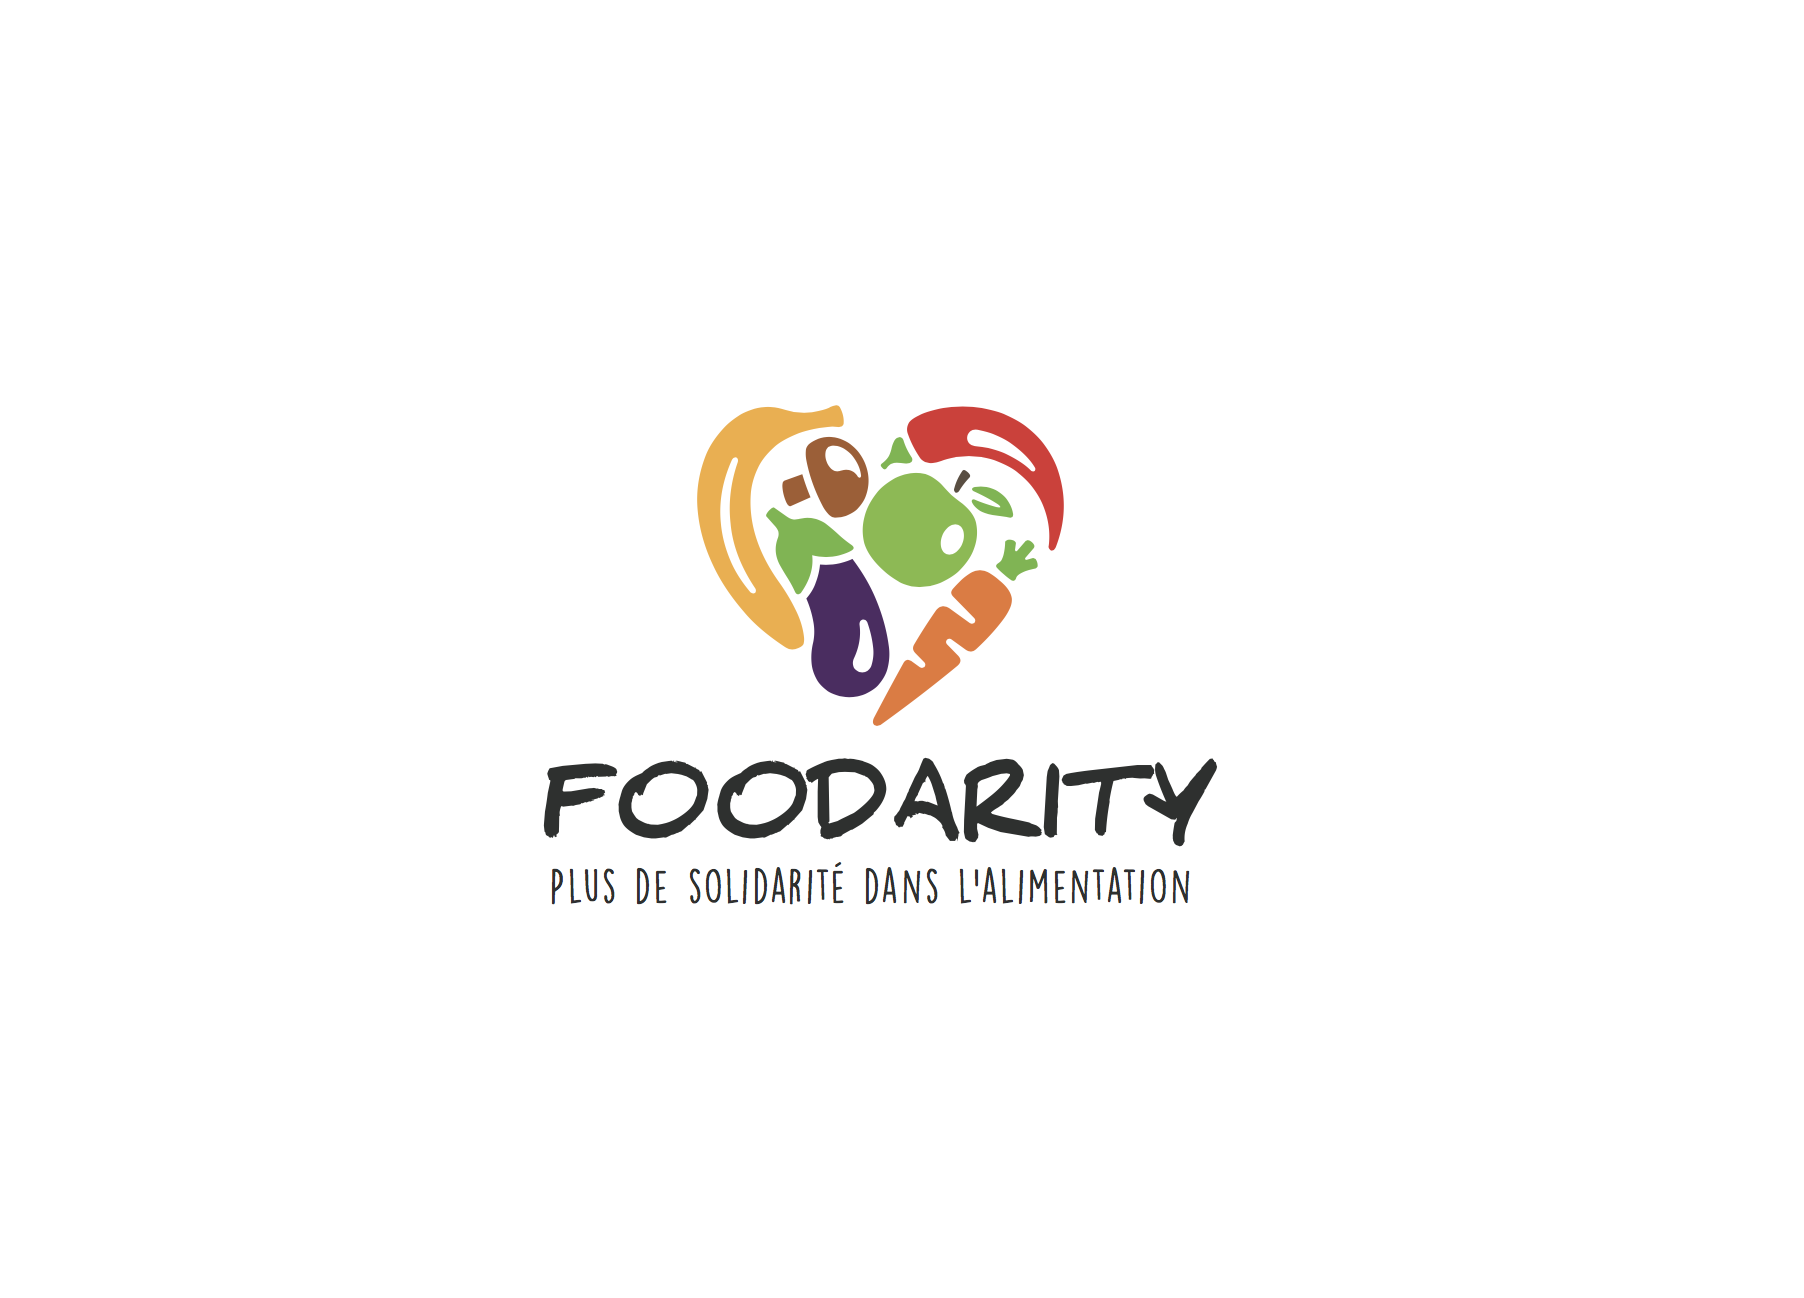 Foodarity